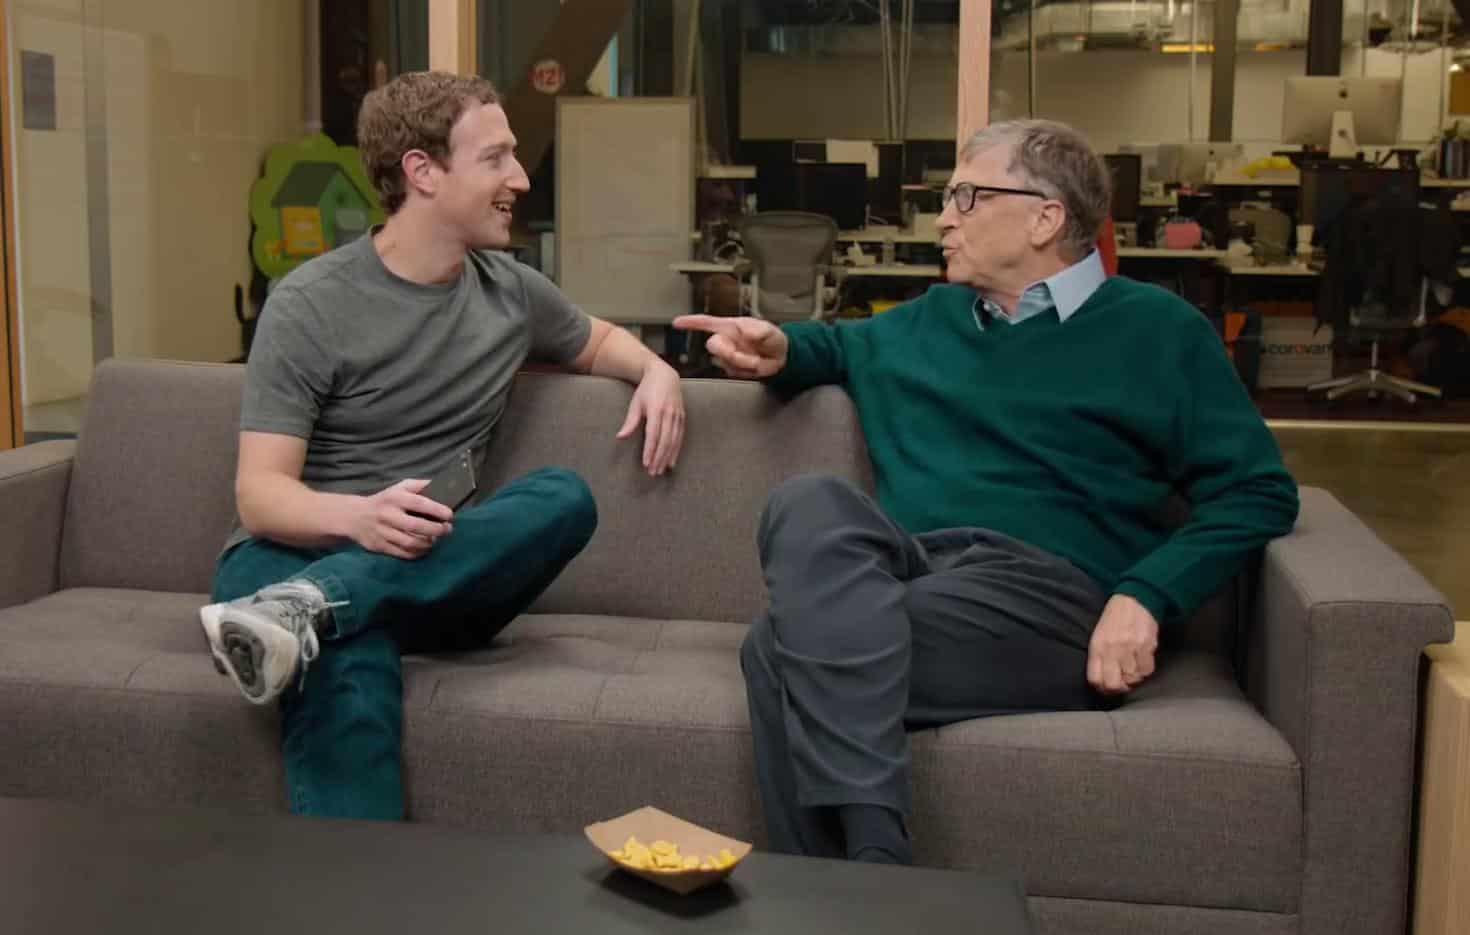 Nhiều người đã từng ví rằng Mark Zuckerberg là một bản sao hoàn hảo của Bill Gates, khi nhà sáng lập Facebook có những điểm tương đồng với vị tỷ phú sáng lập hãng phần mềm Microsoft. Cả hai đều là những thiên tài công nghệ và được xem là những người đã làm thay đổi cuộc sống của thế giới nhờ vào tài năng của mình.